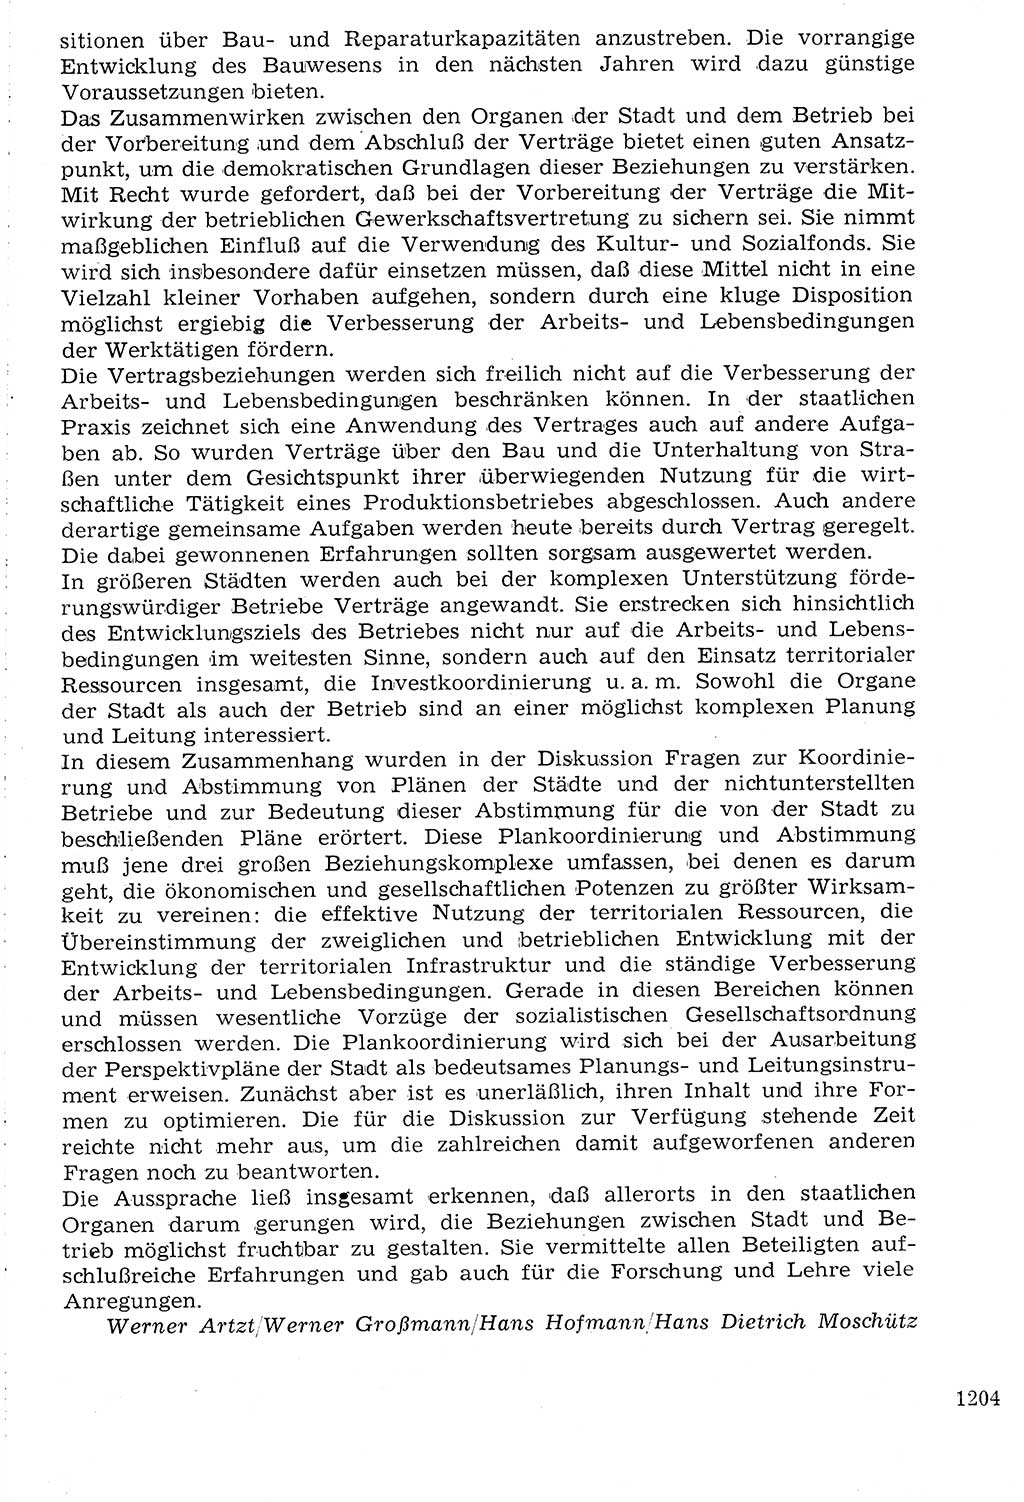 Staat und Recht (StuR), 17. Jahrgang [Deutsche Demokratische Republik (DDR)] 1968, Seite 1204 (StuR DDR 1968, S. 1204)